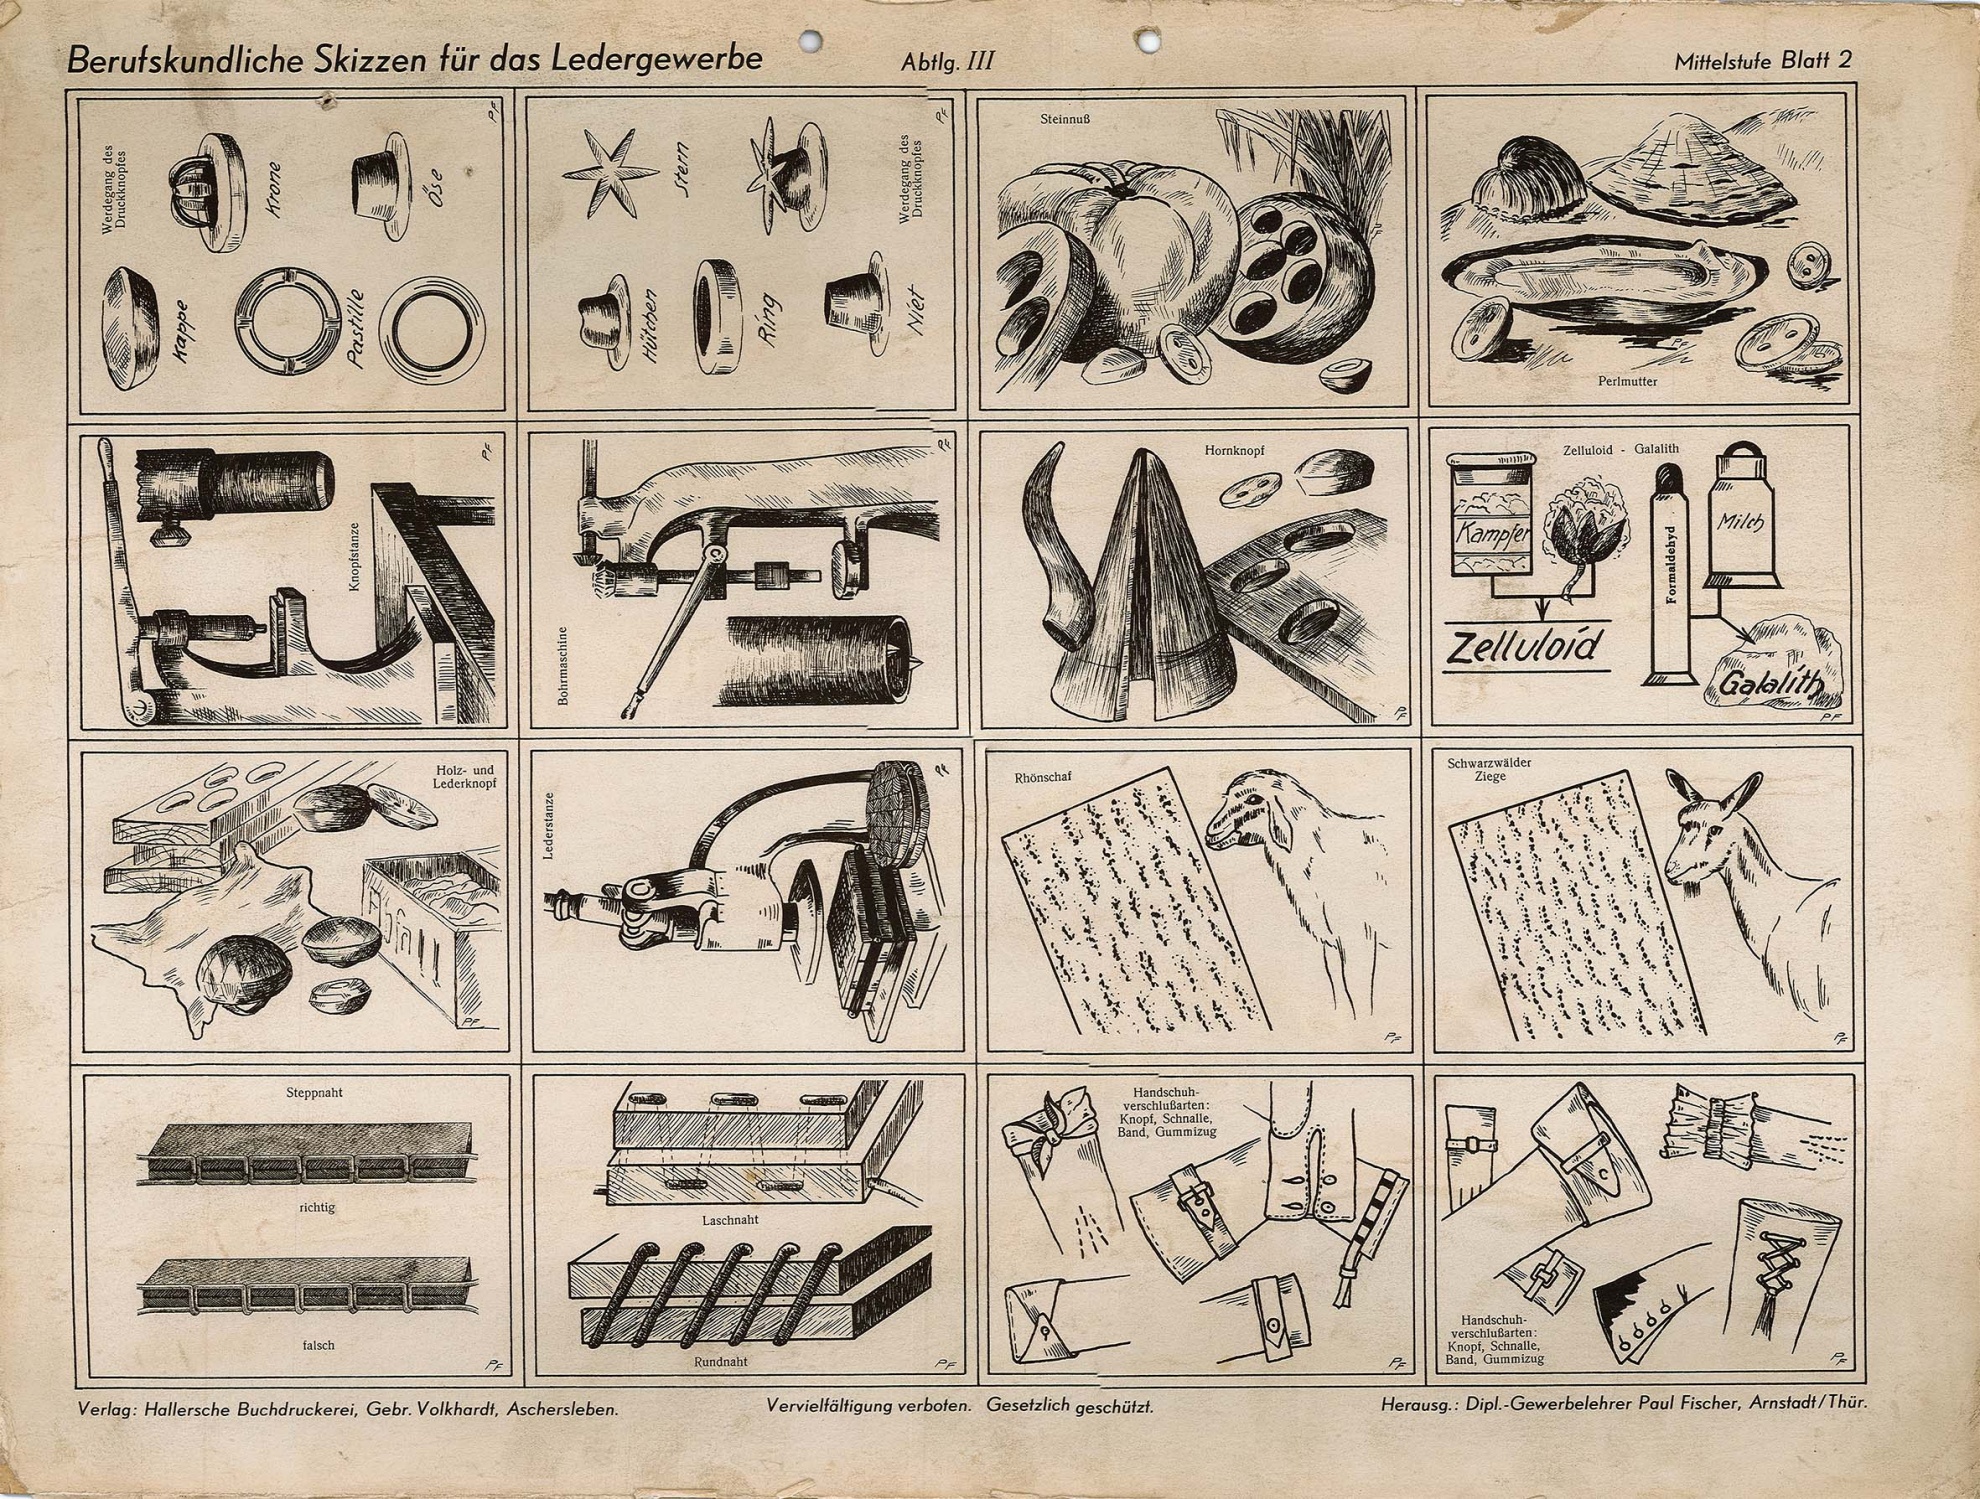 Berufskundliche Skizze für das Ledergewerbe - Mittelstufe Blatt 2 (Museum Wolmirstedt RR-F)